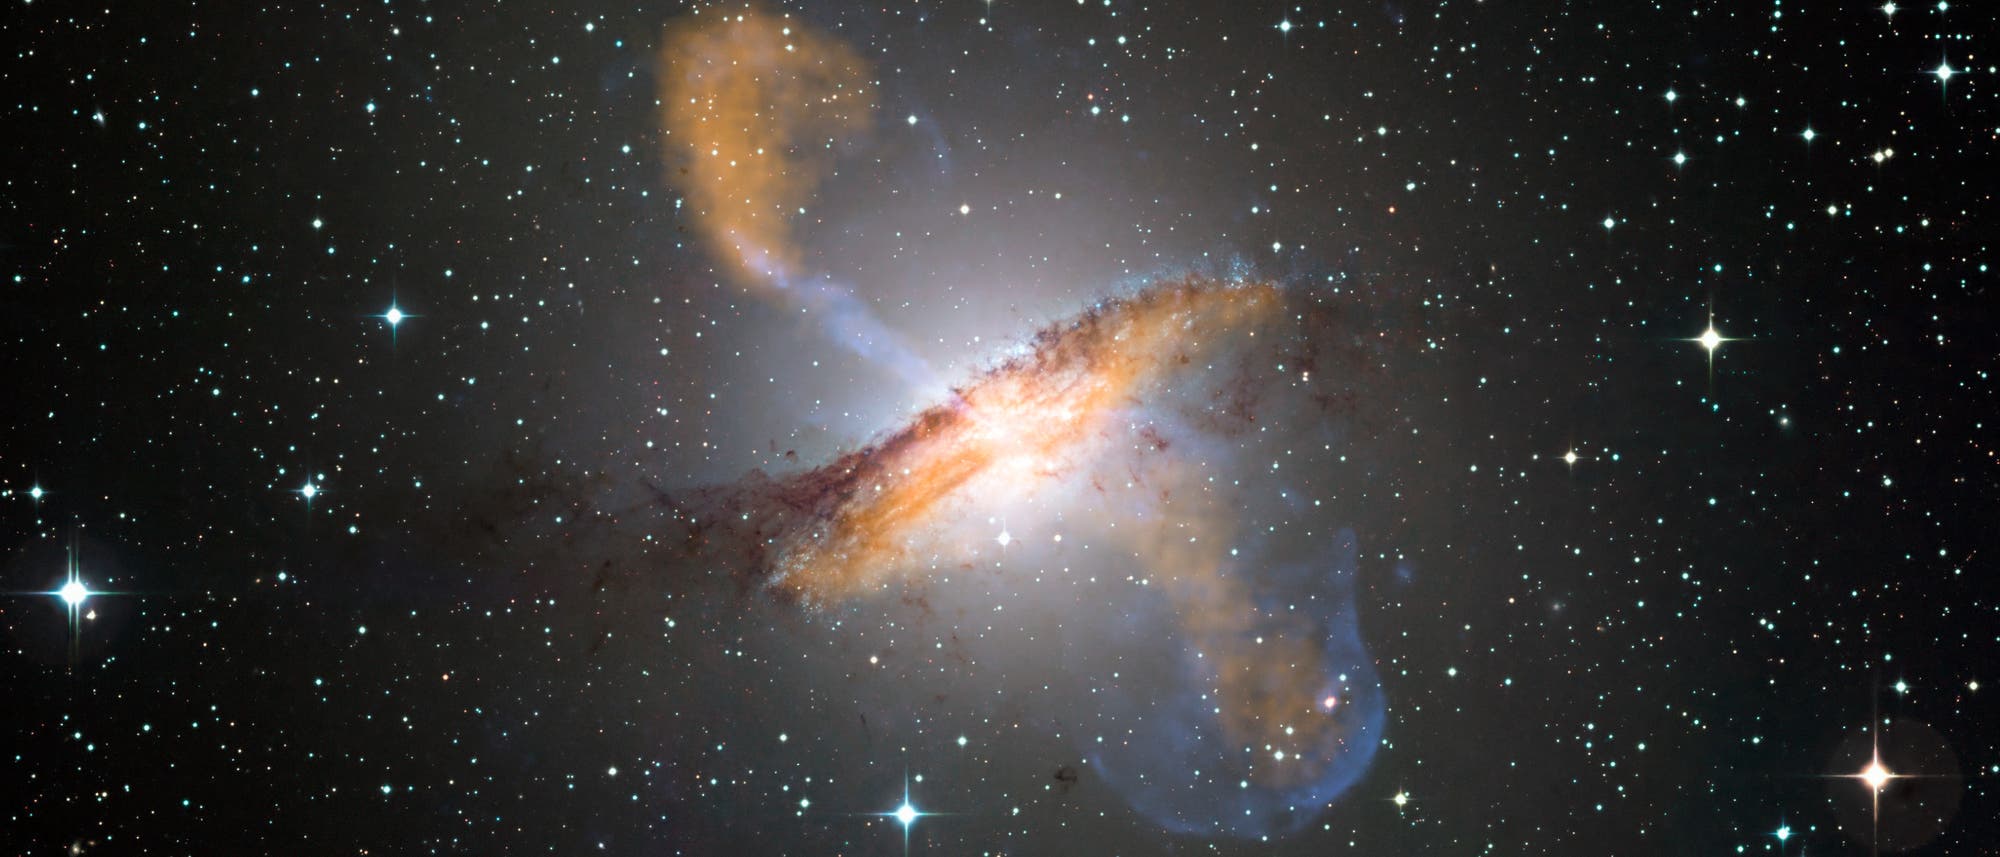 In der Mitte der Spiralgalaxie Centaurus A befindet sich ein Schwarzes Loch, das eng gebündelte Materiestrahlen (blau) aussendet, die nur durch Röntgenteleskope sichtbar werden. Die orange dargestellten Molekülwolken der Galaxie emittieren dagegen Licht im Submillimeterbereich.